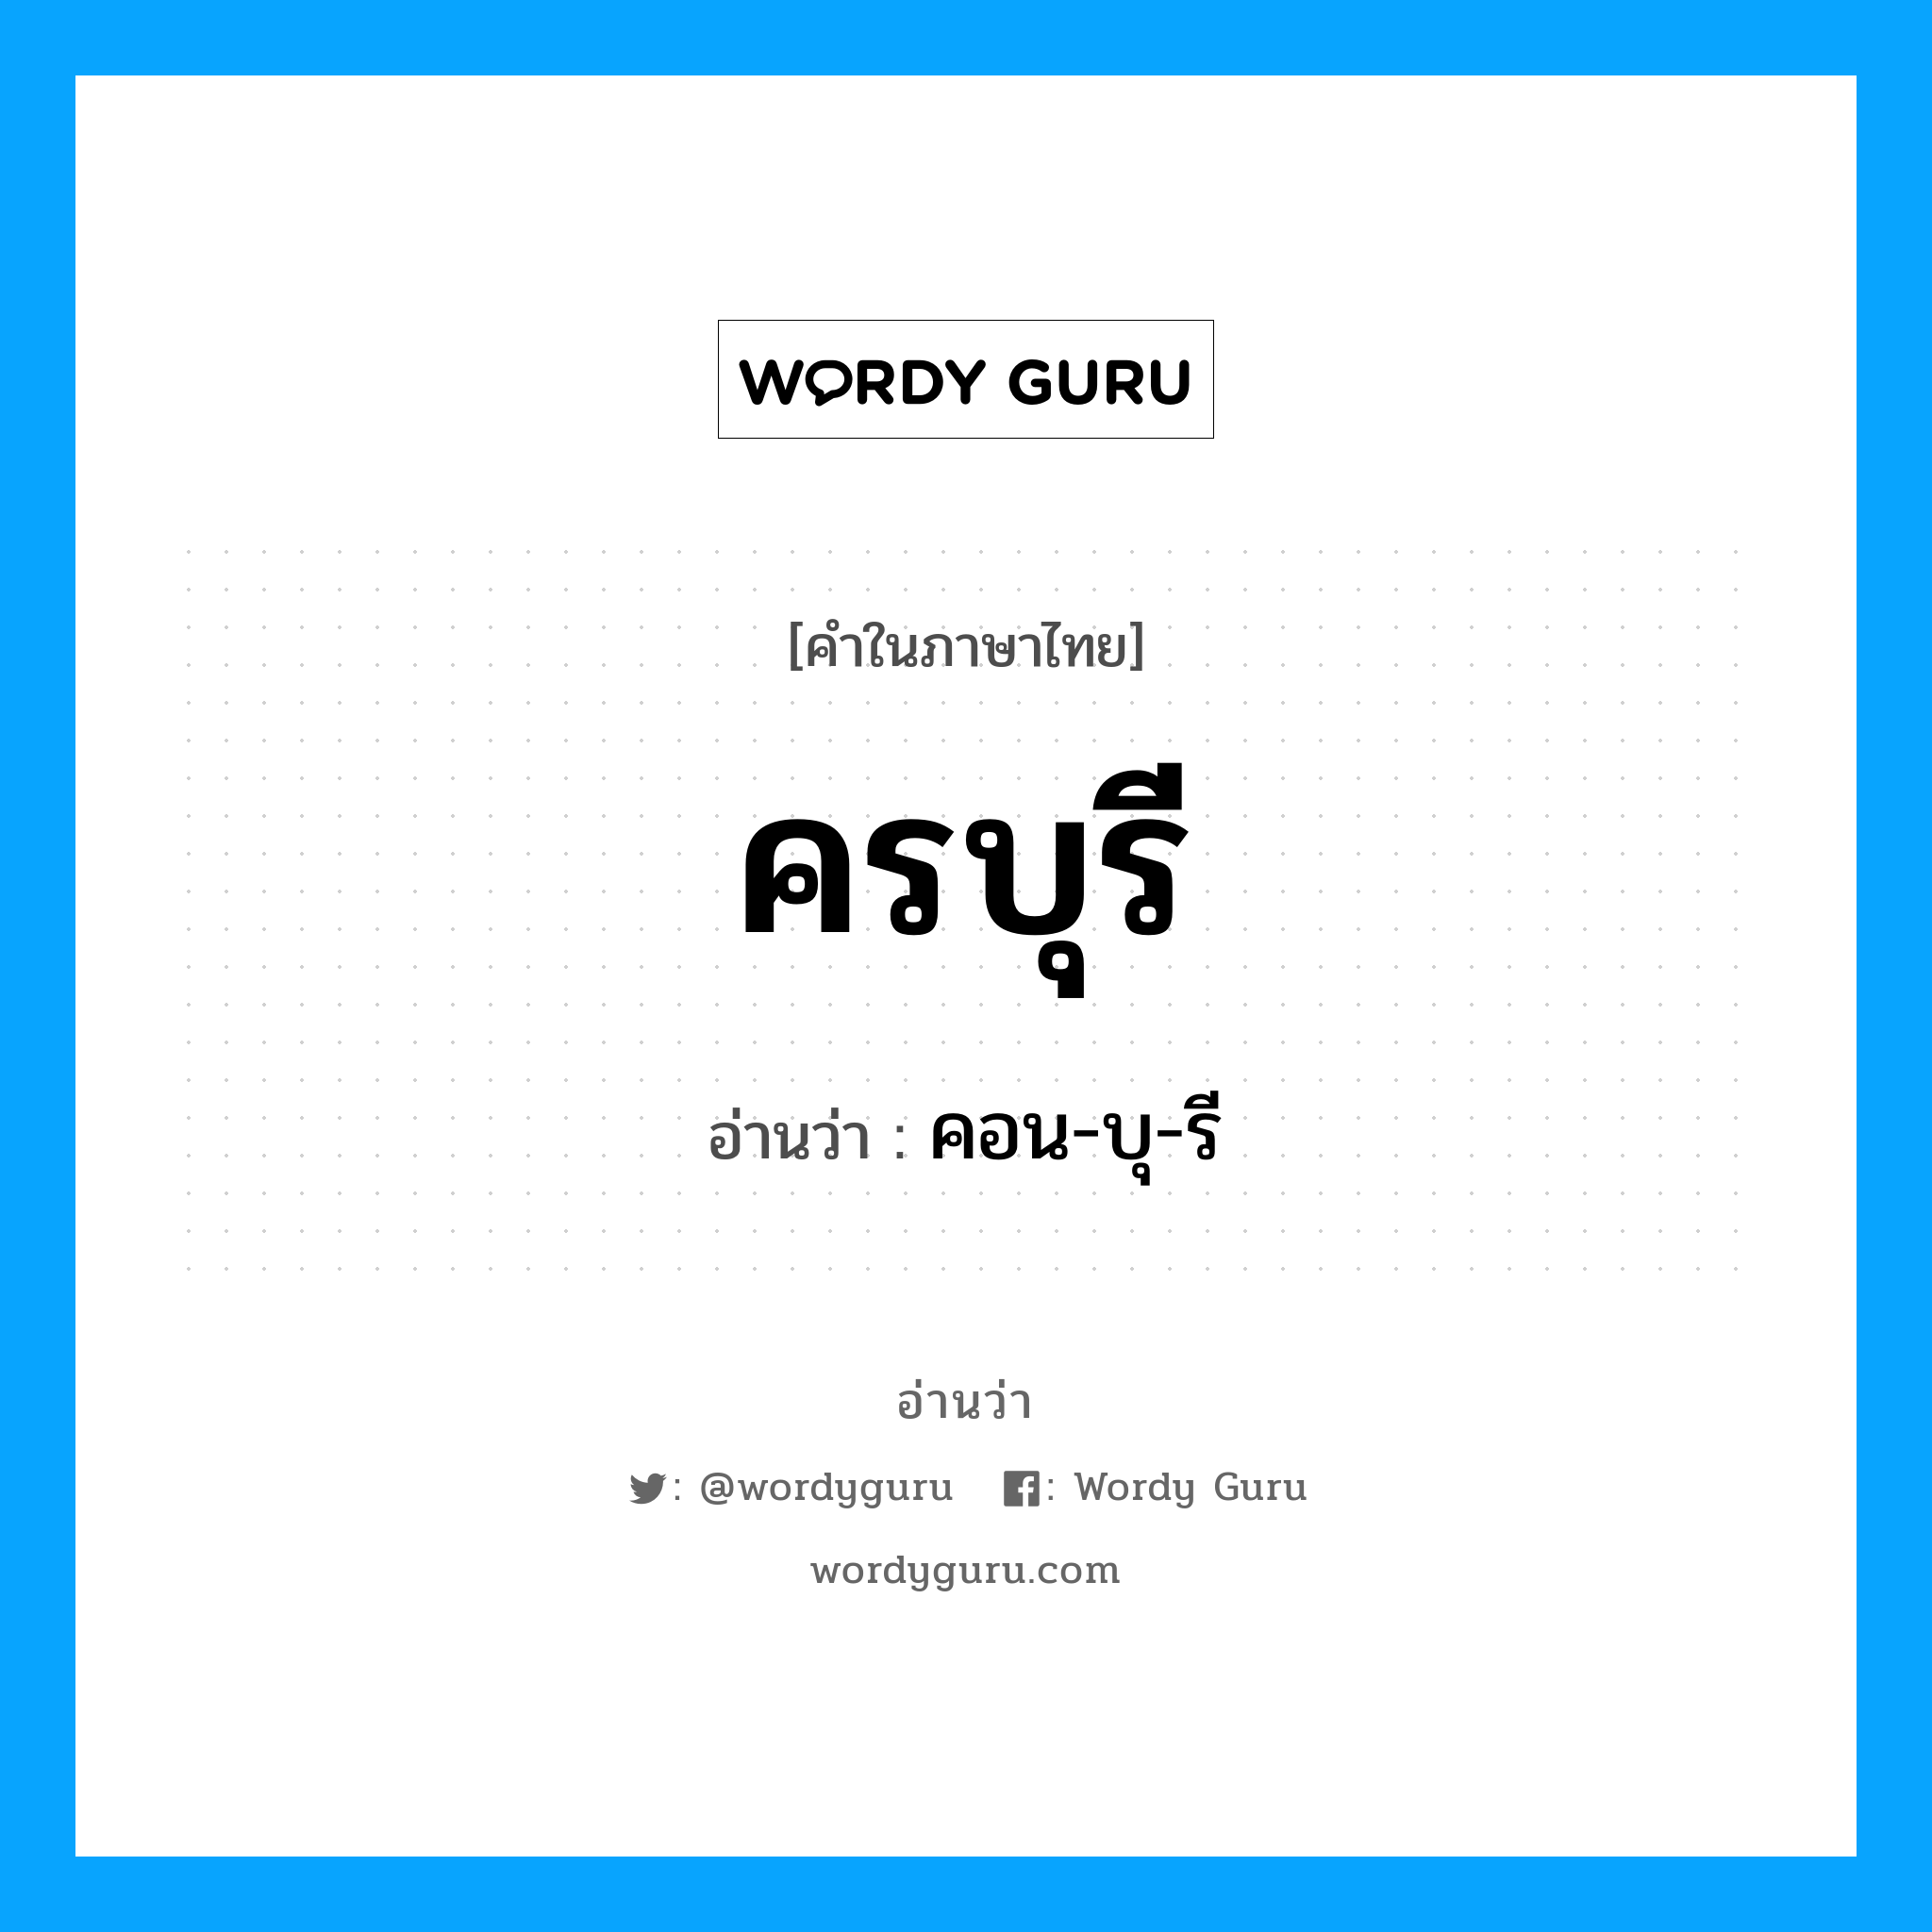 คอน-บุ-รี เป็นคำอ่านของคำไหน?, คำในภาษาไทย คอน-บุ-รี อ่านว่า ครบุรี